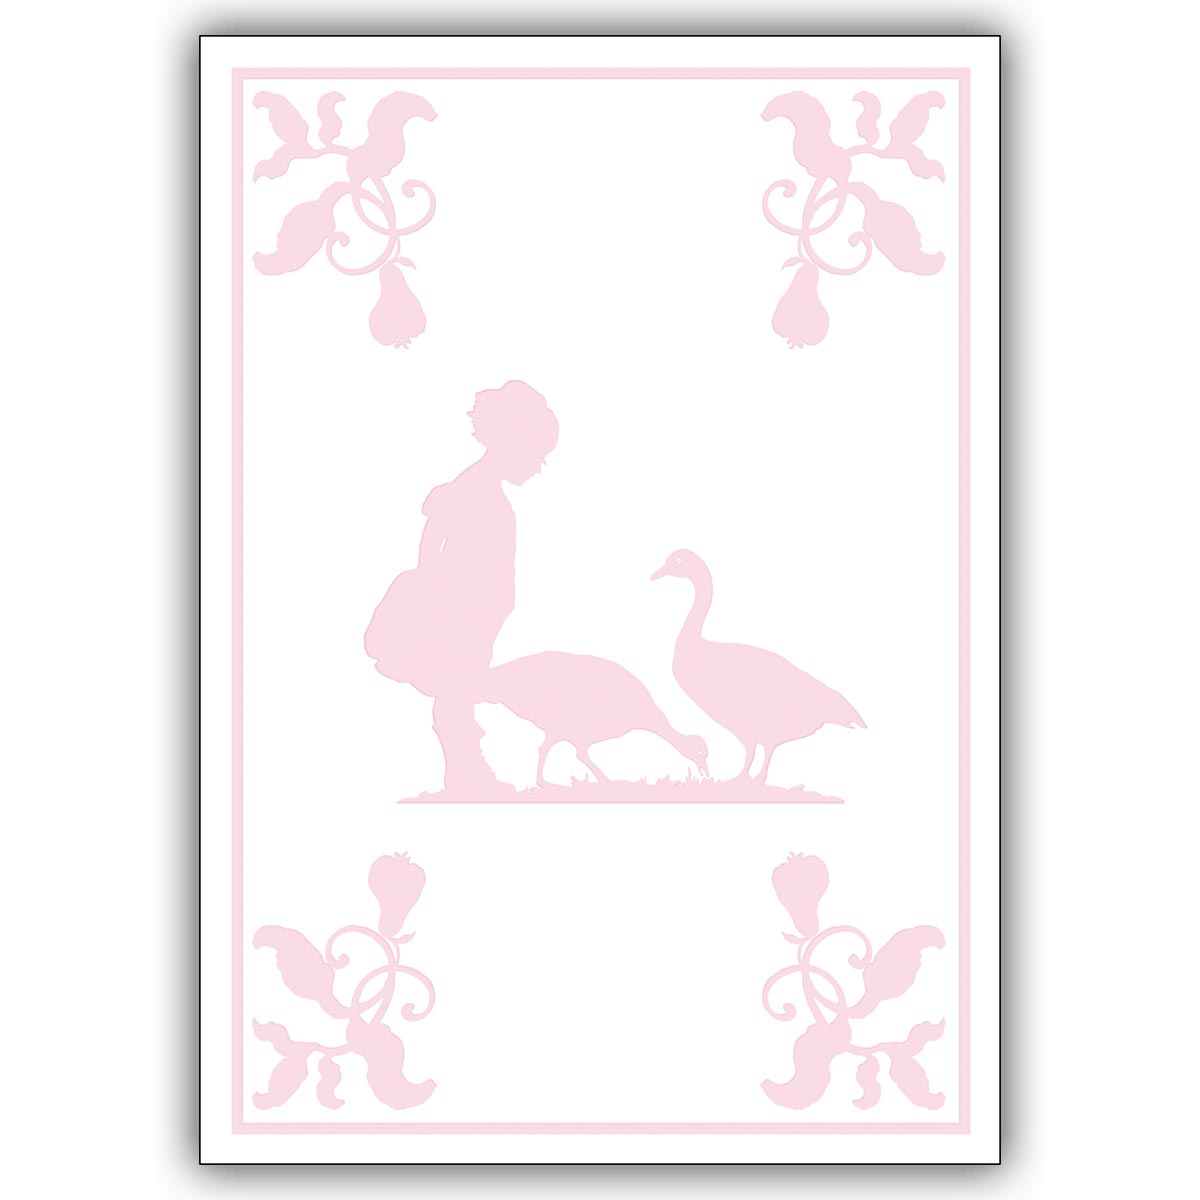 Elegante Babykarte zur Geburt und Taufe mit zartem Scherenschnitt in rosa